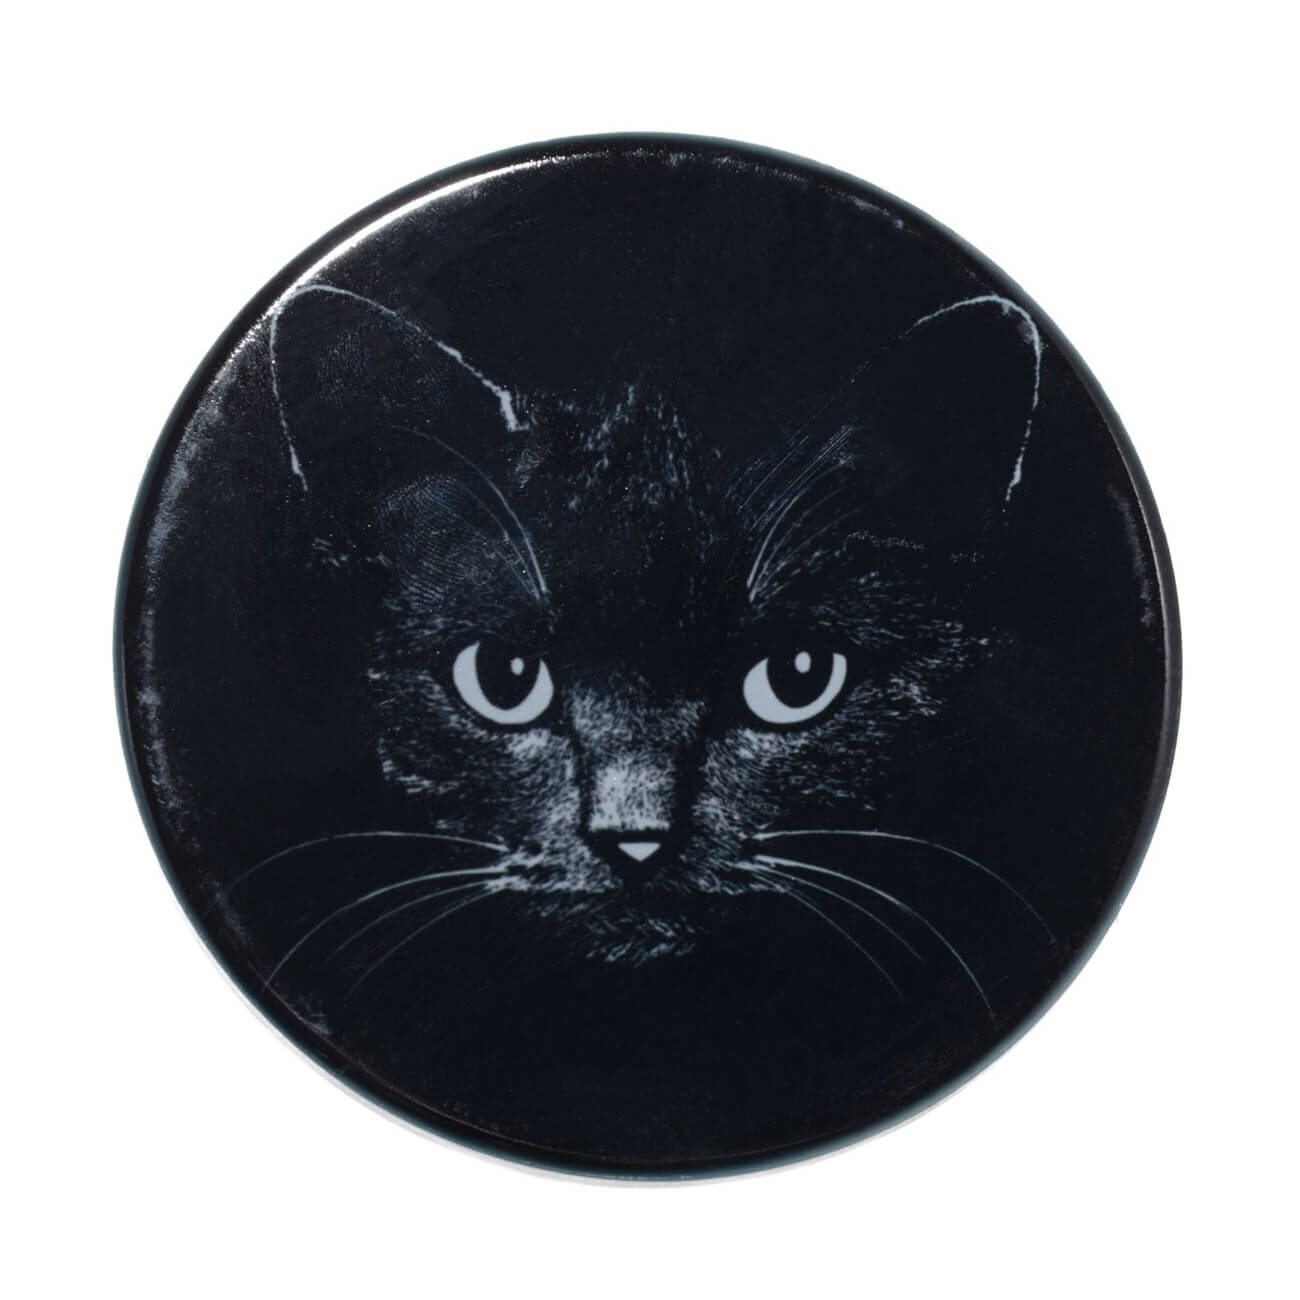 Подставка под кружку, 11x11 см, керамика/пробка, круглая, черная, Ночной кот, Cat night подставка под серьги 13x16 см черная